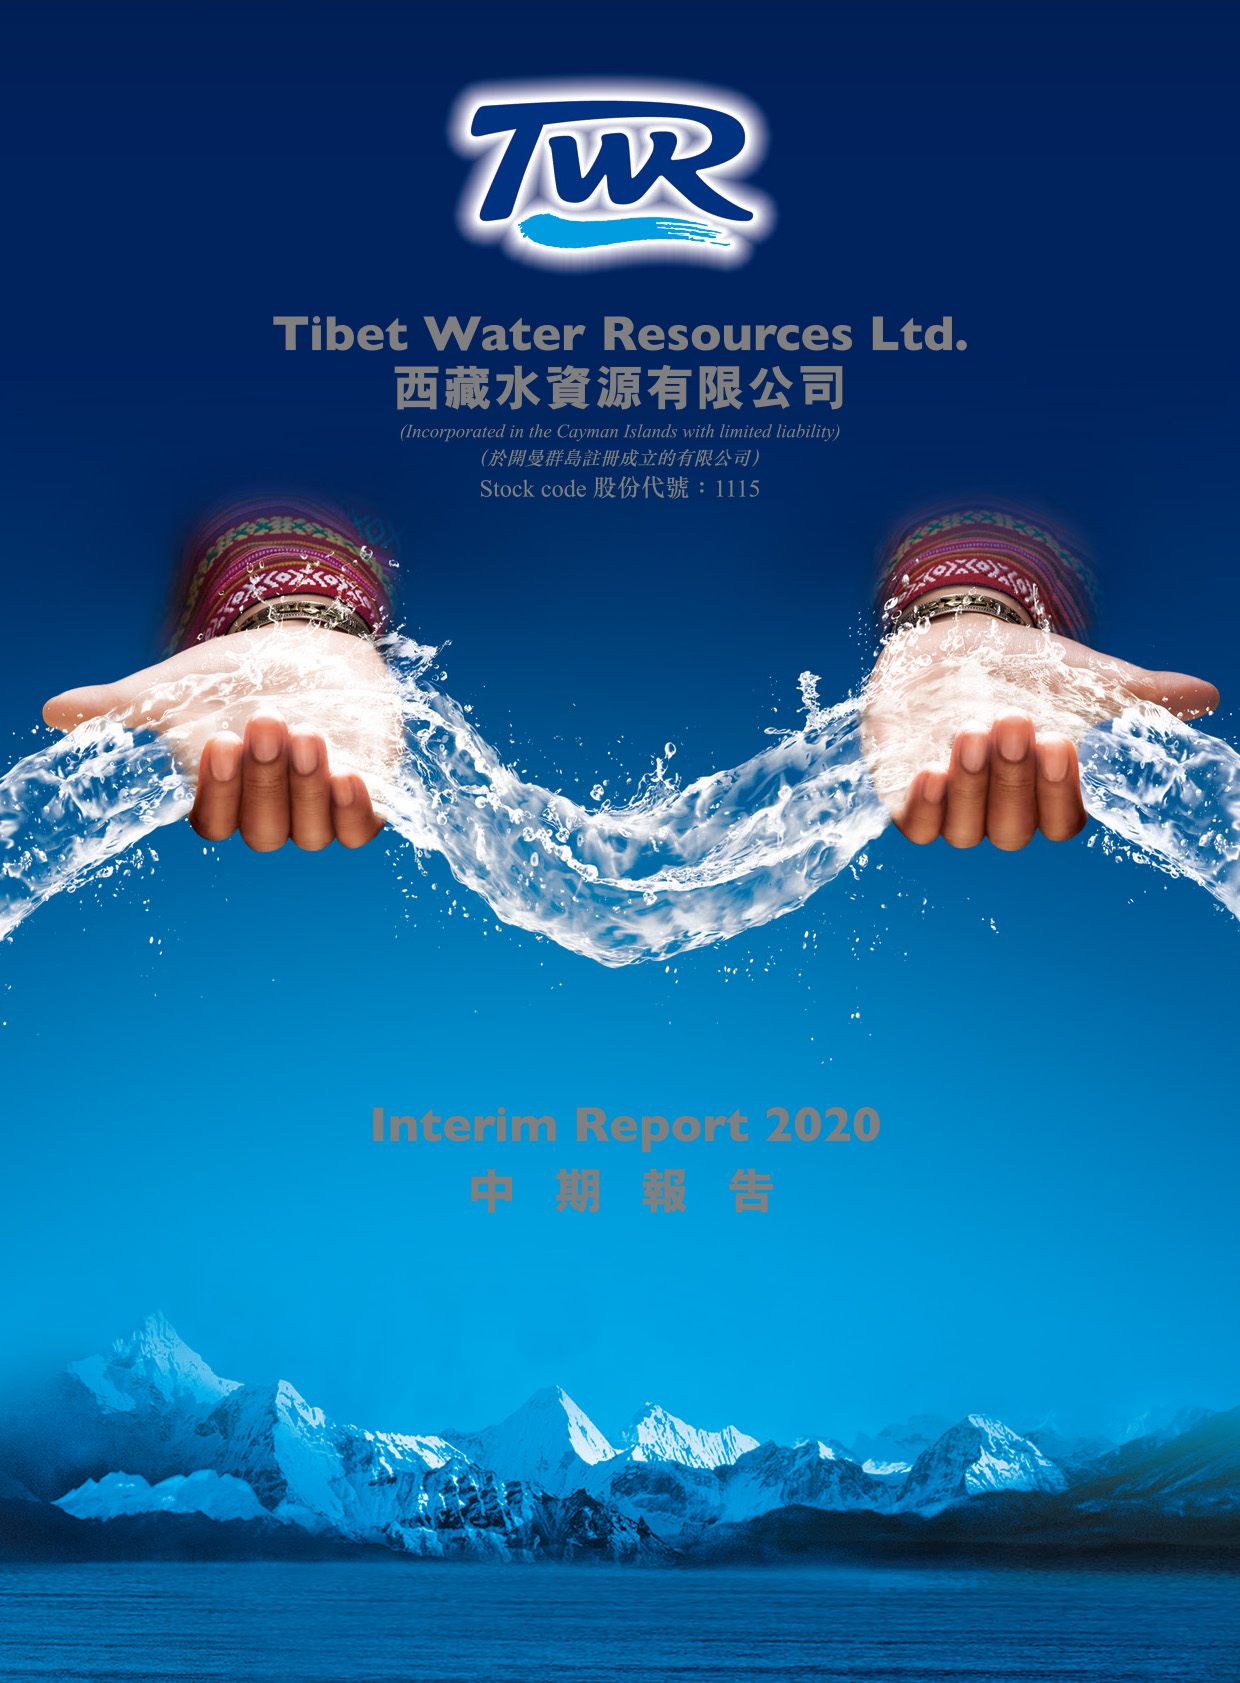 Tibet Water Resources Ltd.